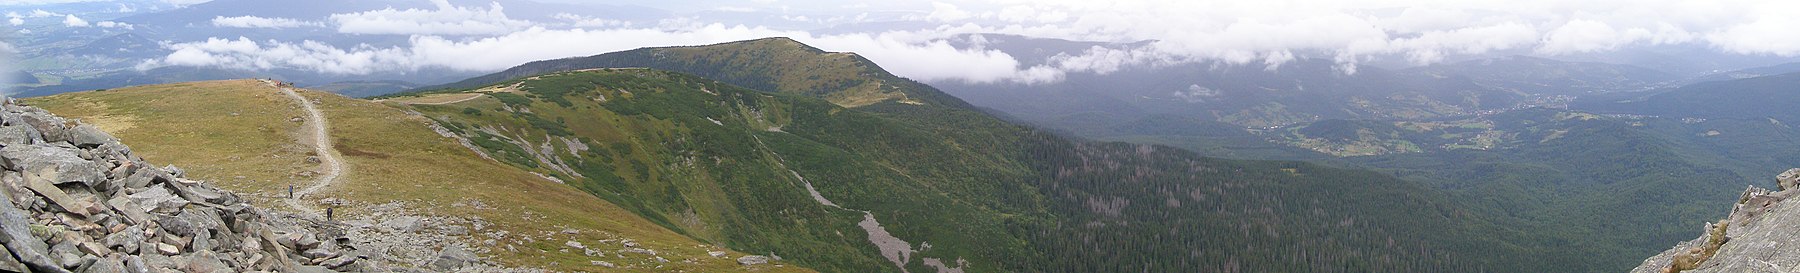 BgPN Бабья гора панорама.jpg